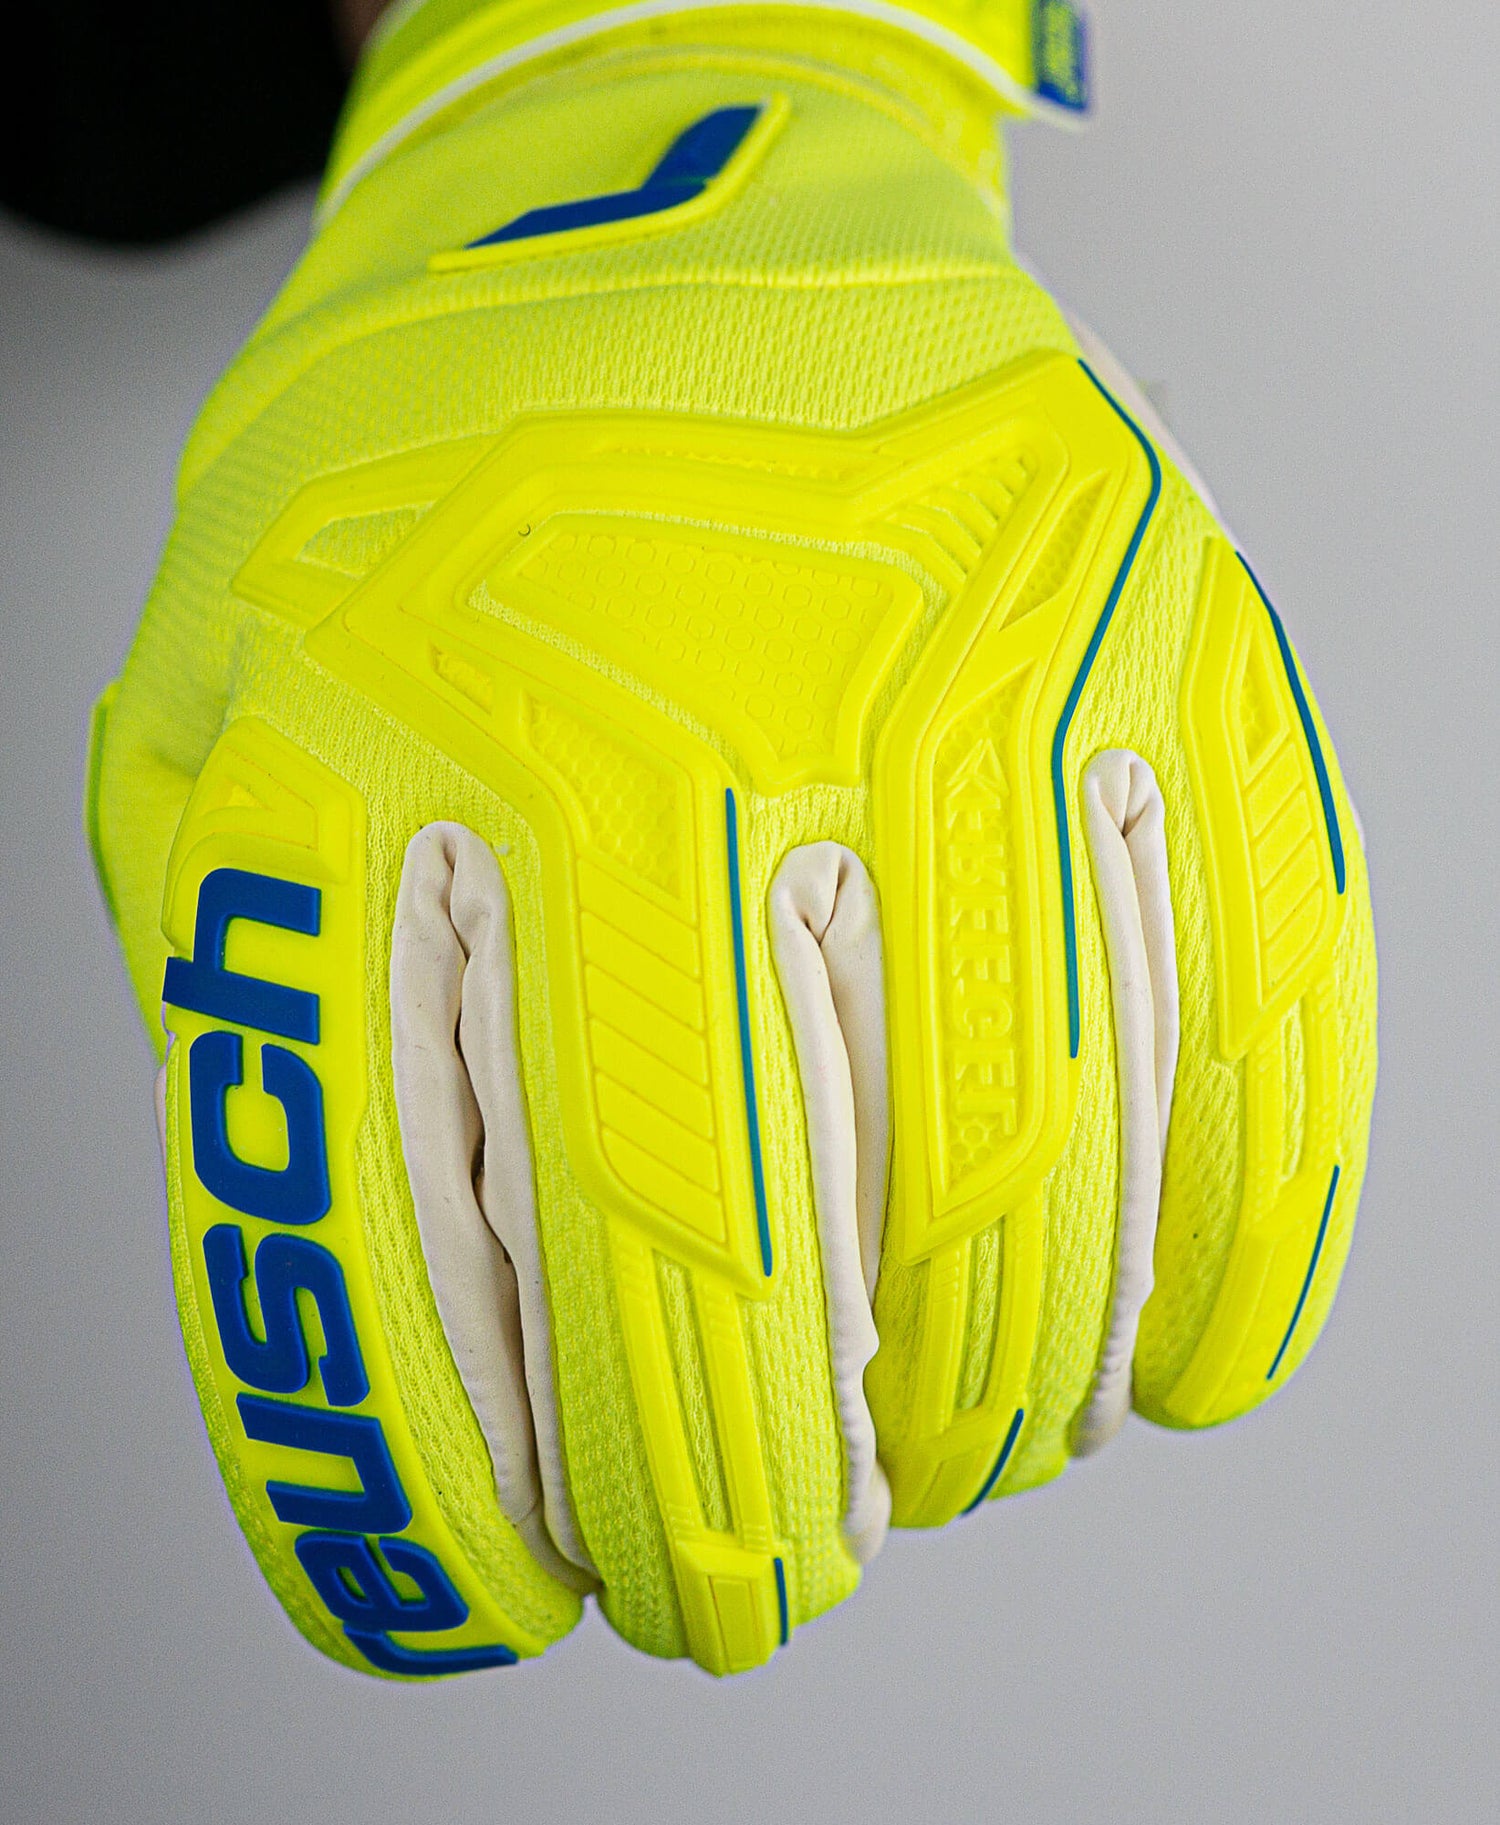 Reusch Attrakt Freegel Gold X Finger Support Goalkeeper Gloves - Yellow-Blue-White (Detail 1)